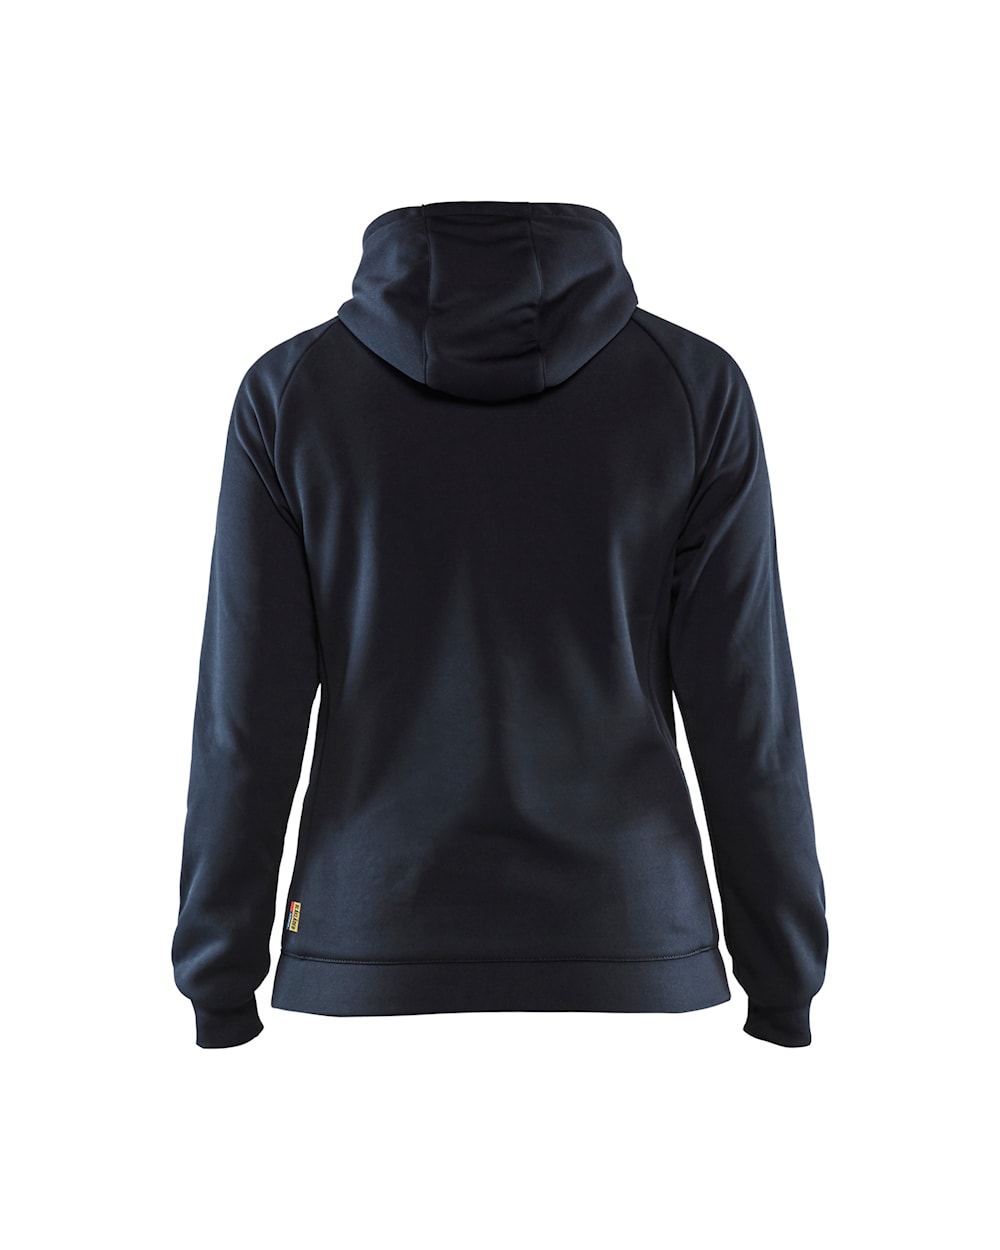 Damen Hybrid Sweater dunkel marineblau / schwarz hinten, DB Schenker